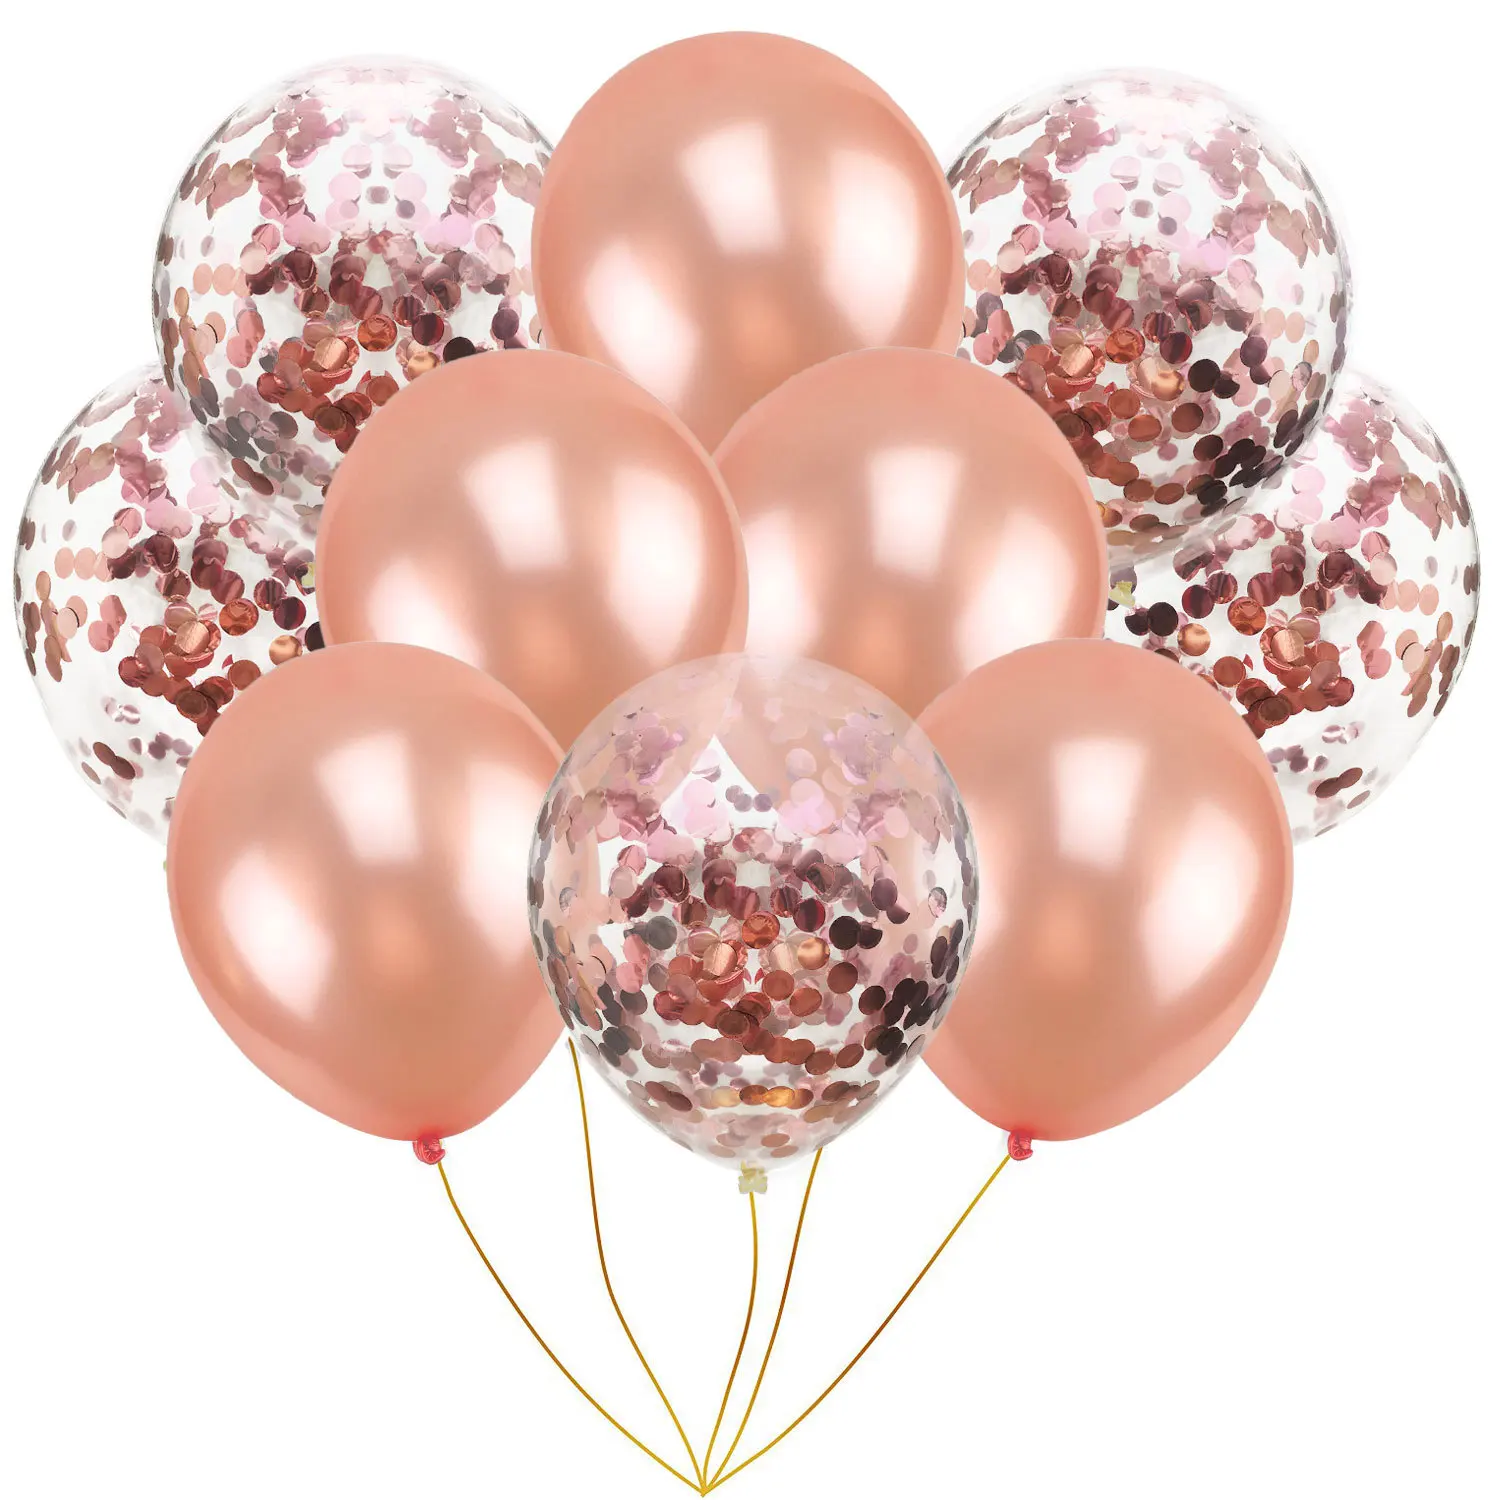 10 шт., разноцветные латексные шары цвета розового золота, конфетти, розовые 12 дюймовые вечерние шары для детского душа, свадебные украшения - Цвет: rose gold